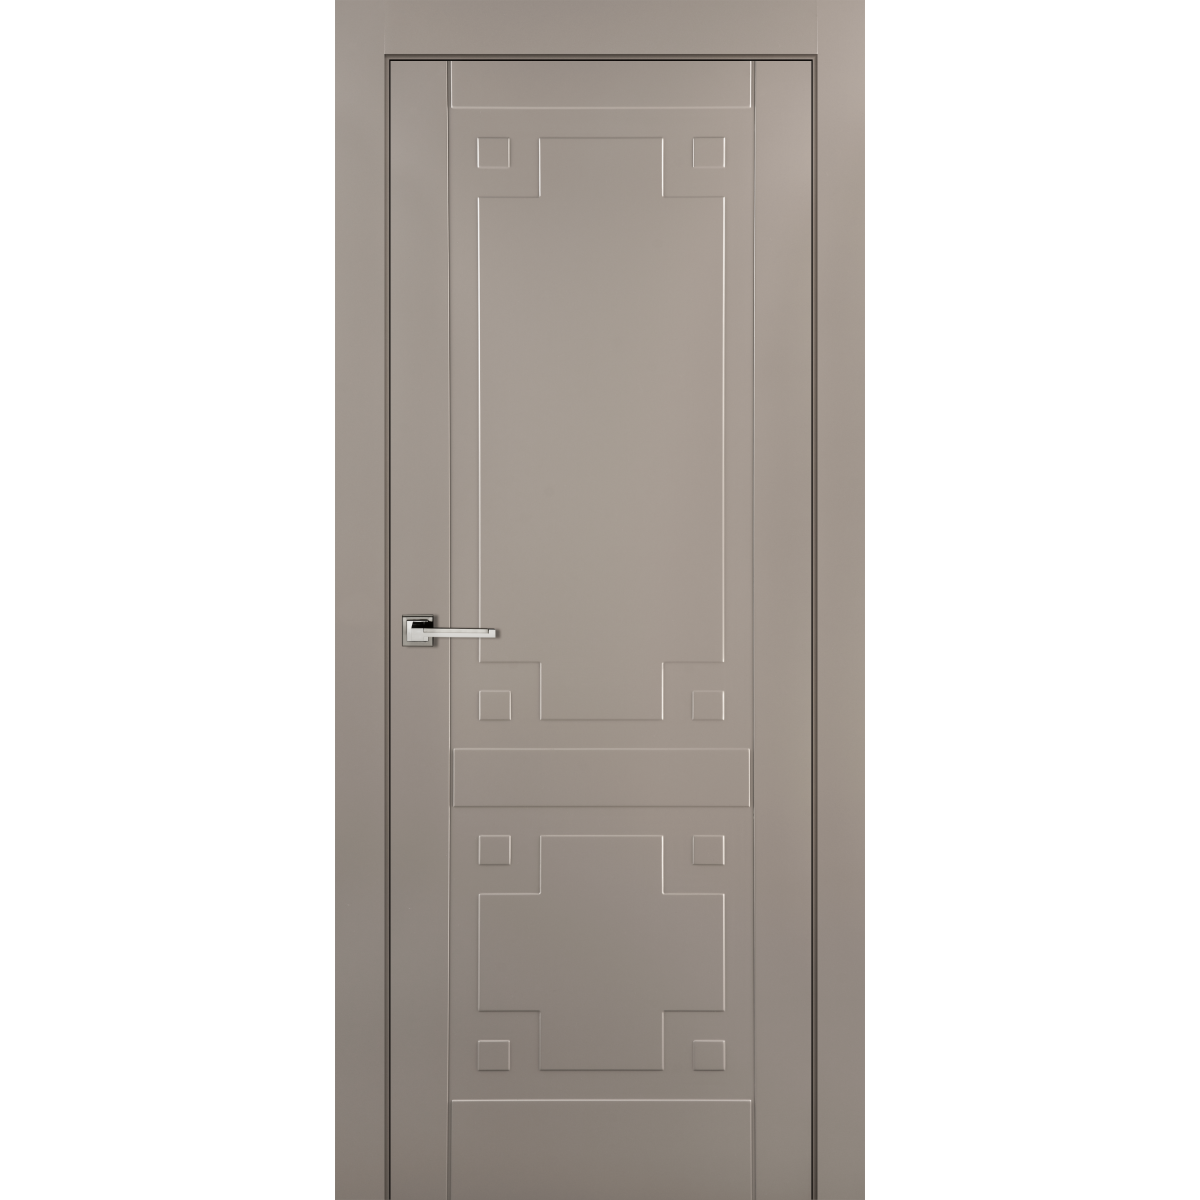 Дверь межкомнатная глухая с замком в комплекте Лира 60x200 см эмаль цвет мускат